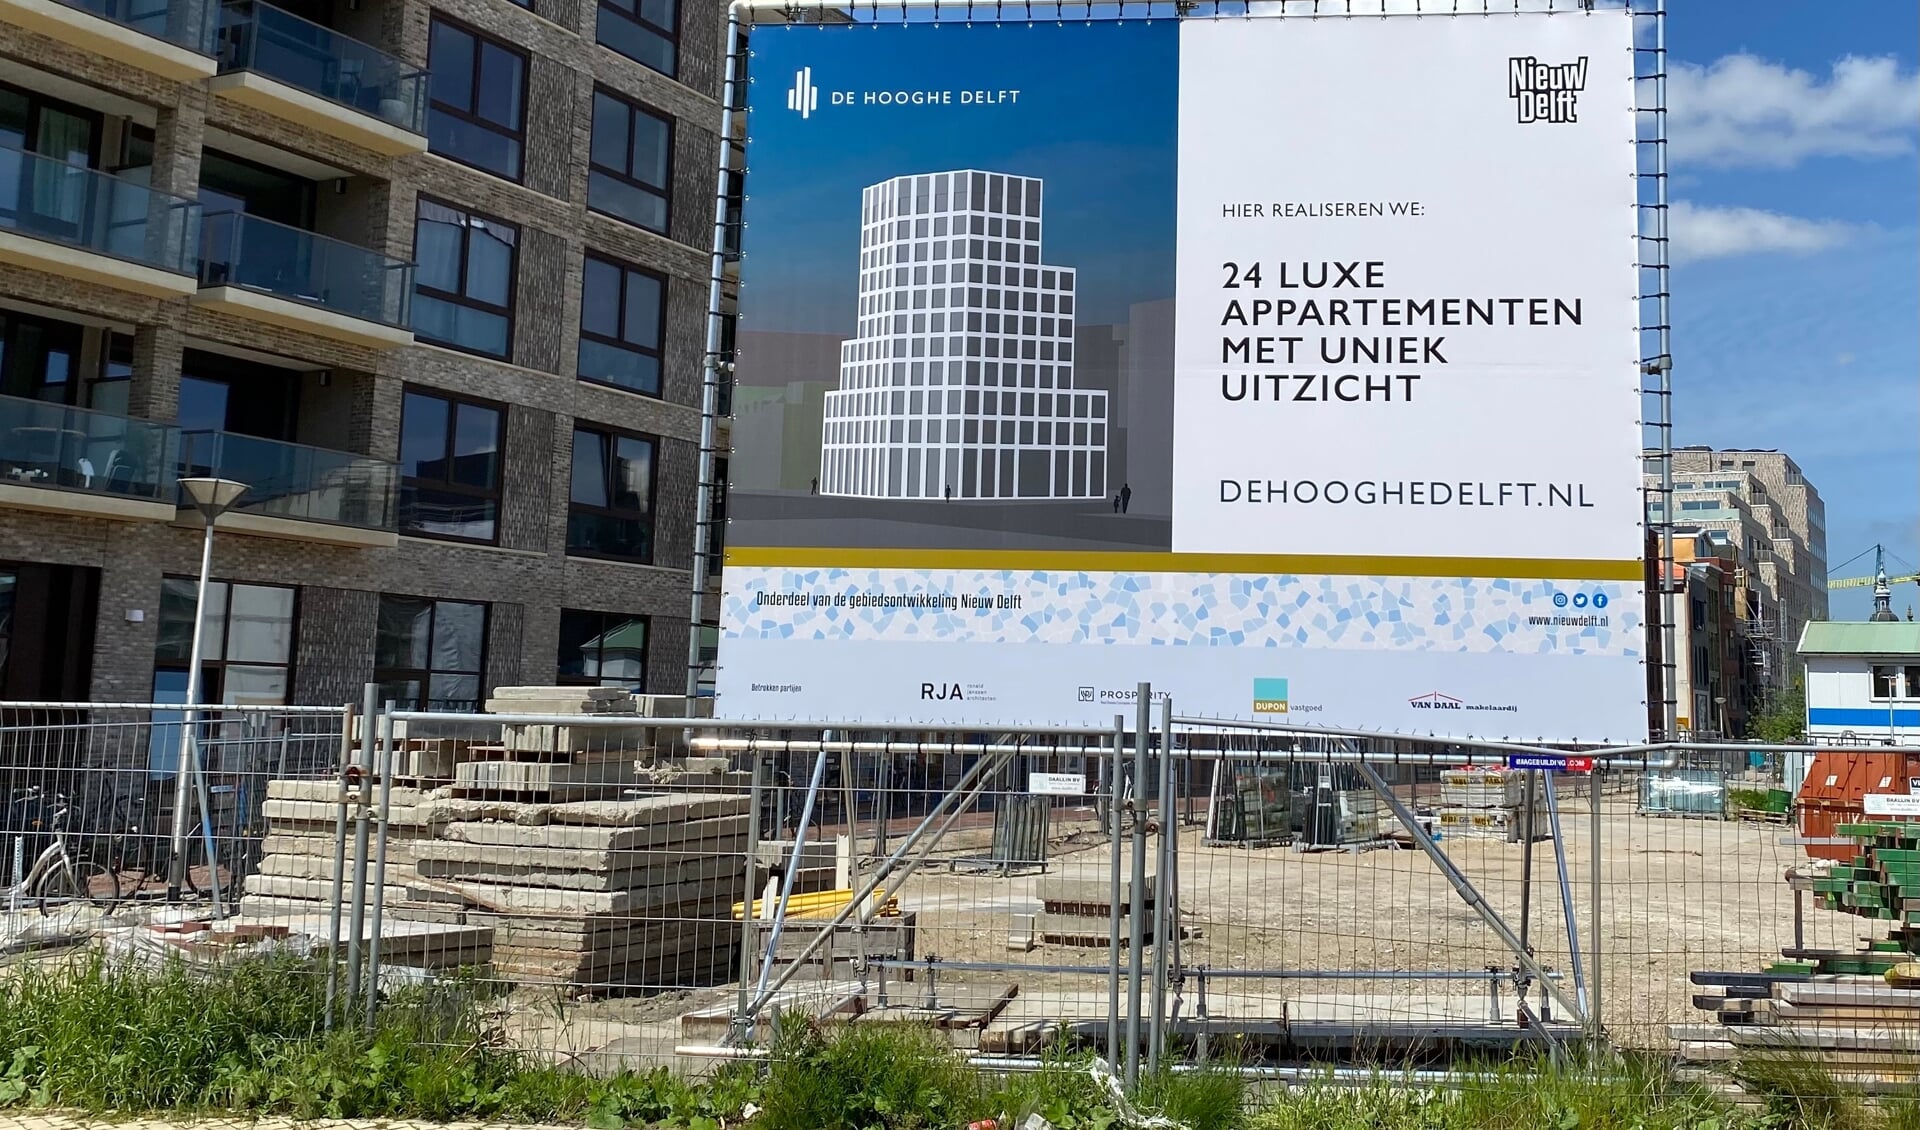 In het stadsdeel Nieuw Delft verrijst een unieke multifunctionele toren met een robuust uiterlijk onder de naam De Hooghe Delft 